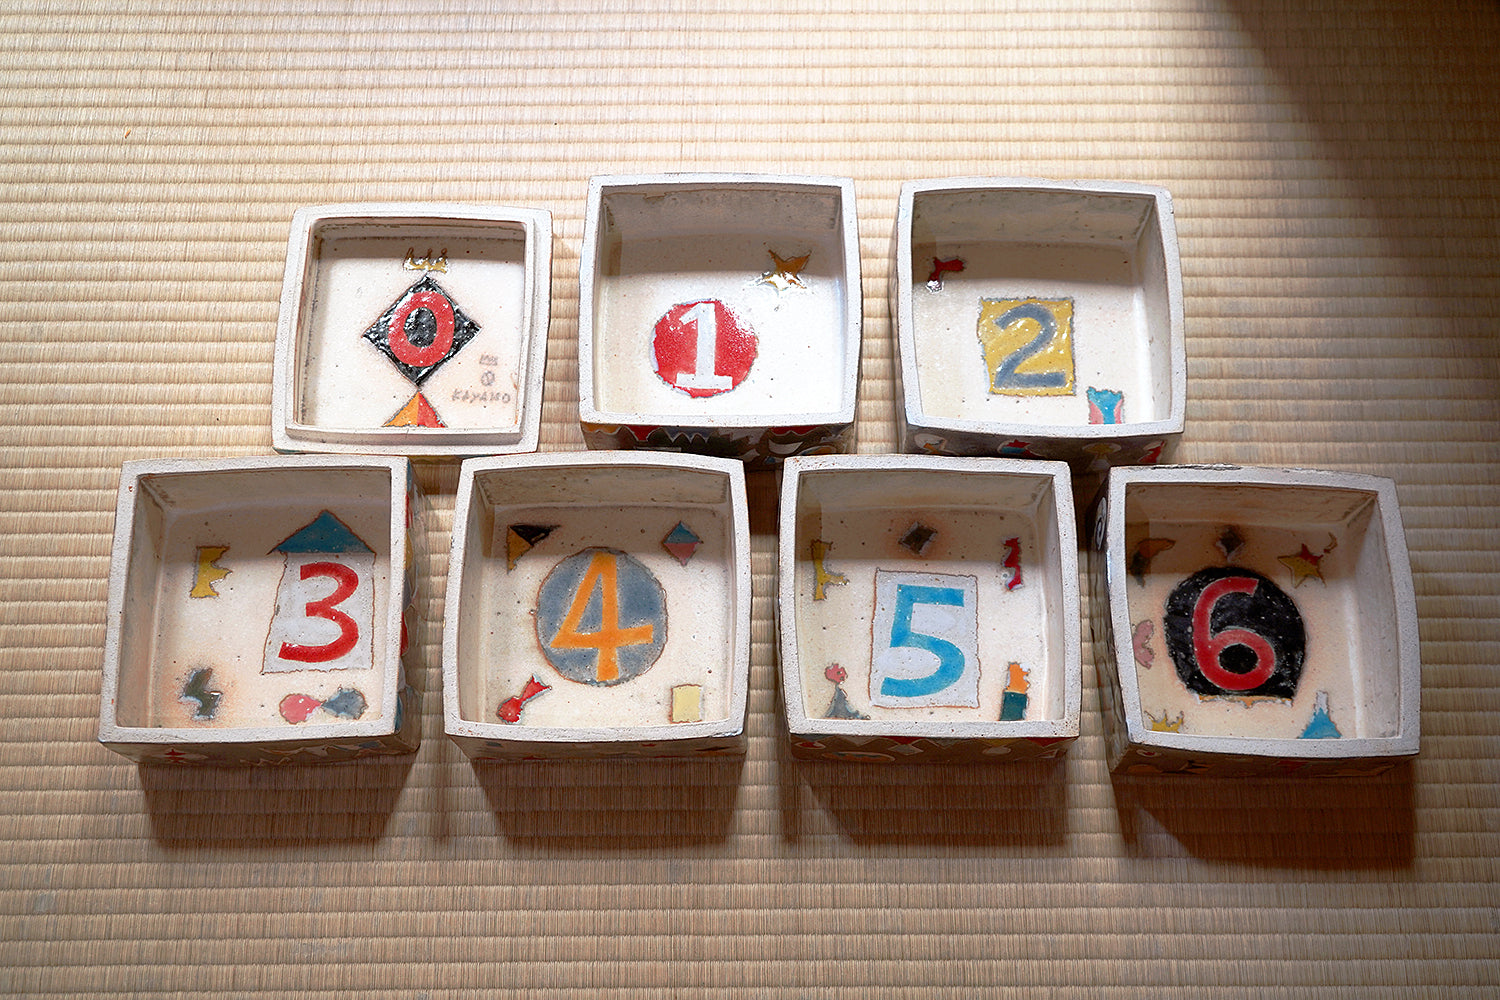 陶芸・栢野 紀文 展 『 天 晴 』　Ceramic artist KAYANO Kibun’s solo exhibition “APPARE”　追加３９点を公開しました！